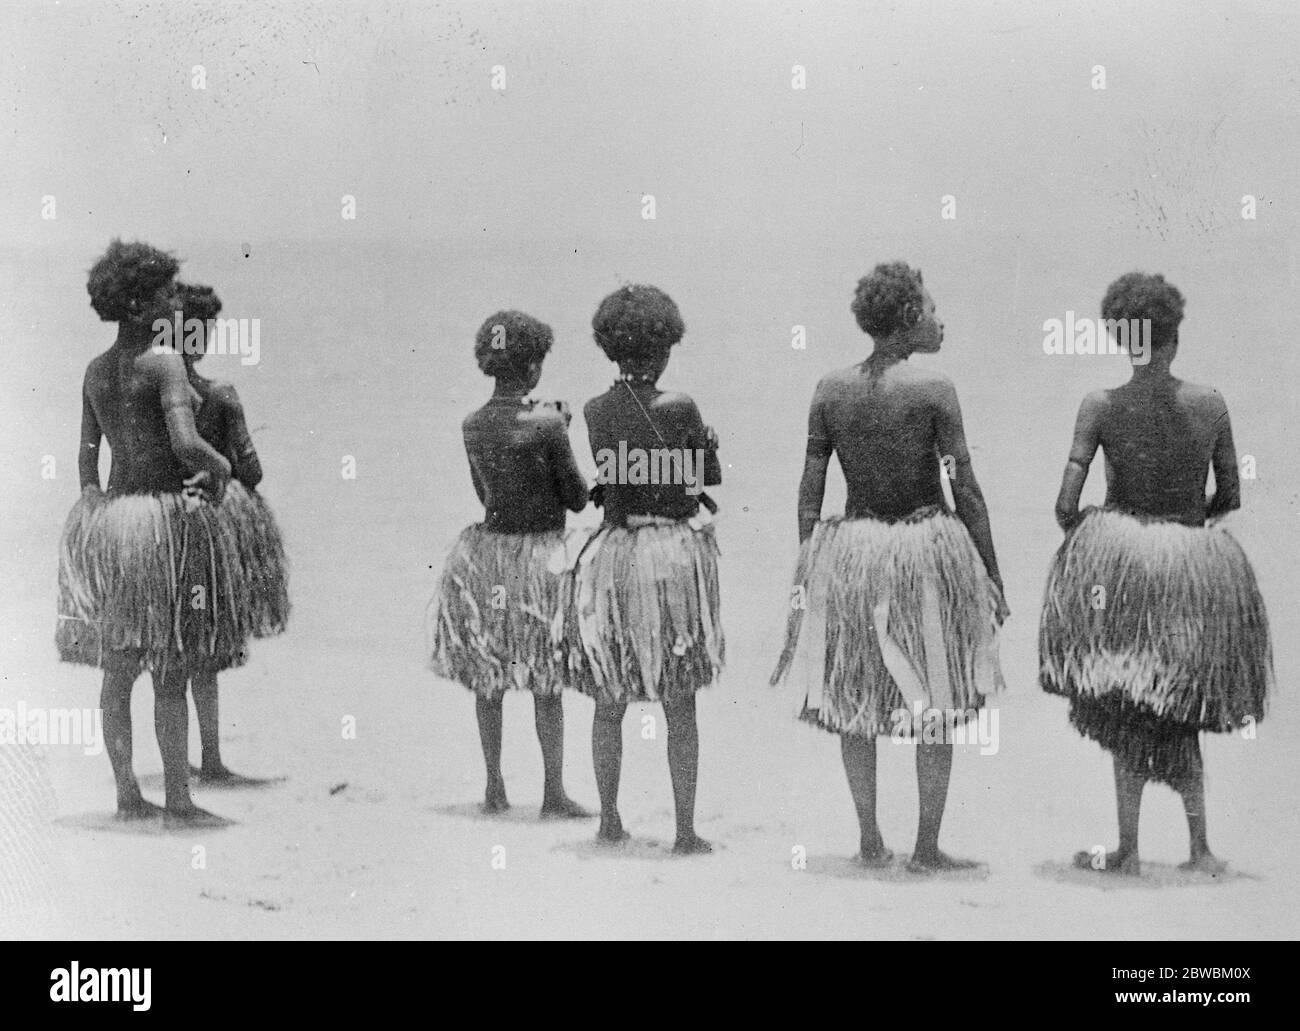 Tolle Insel zu erkunden. British Pacific Science Expedition Segel für Papua . Eifrige Papua-Eingeborene beobachten das Heben eines Segelschiffes auf einem Segelschiff. 14 Dezember 1922 Stockfoto